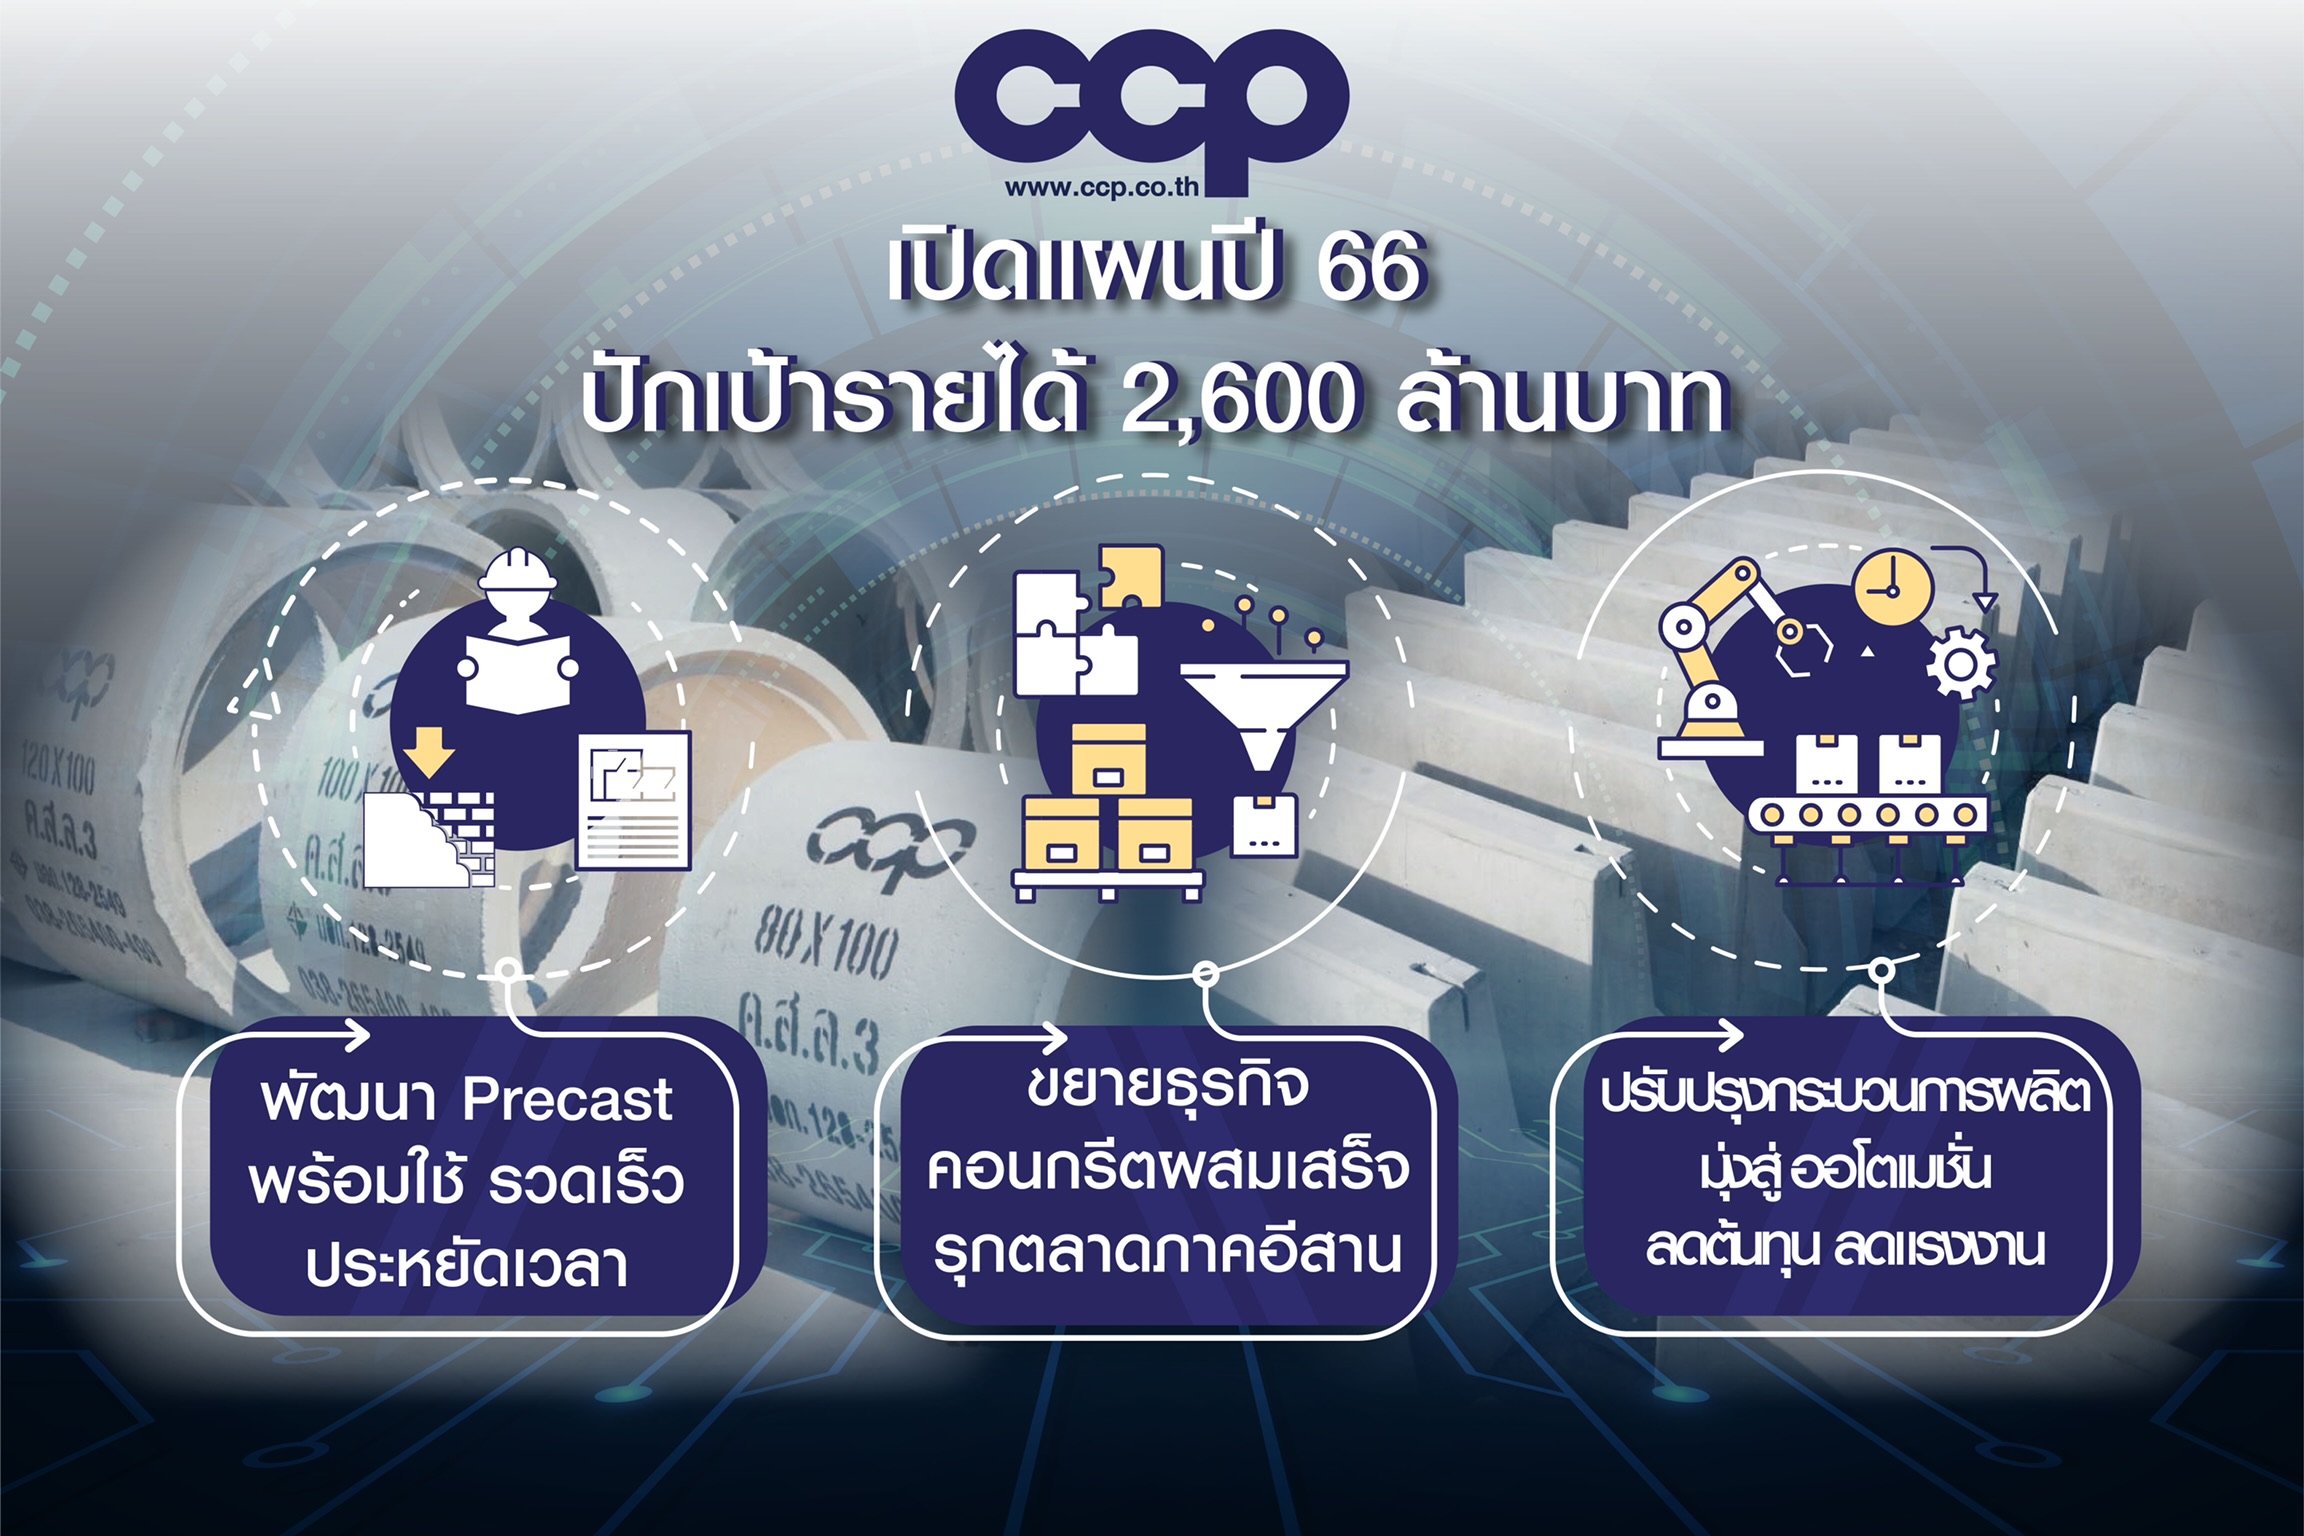 CCP เผยแผนธุรกิจปี 66 ชูผลิตภัณฑ์Precast พร้อมใช้ ขยาย Ready Mix รุกตลาดภาคอีสาน ปักเป้ารายได้ 2600 ล้านบาท